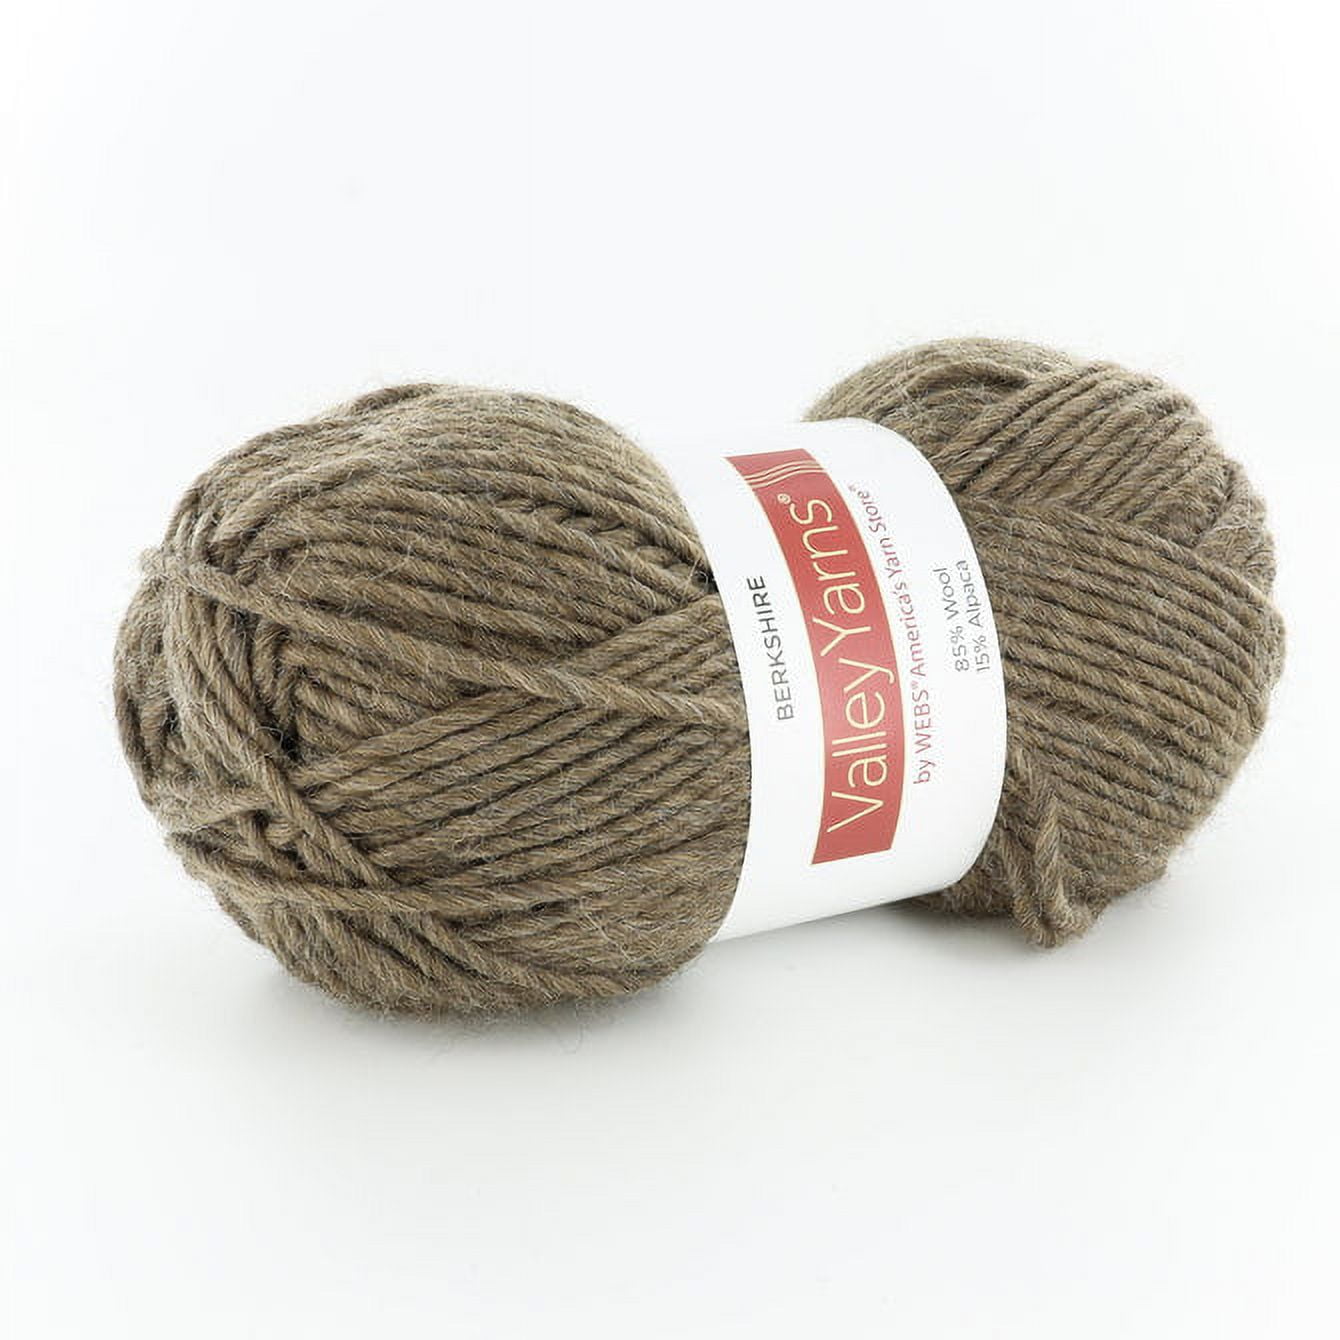 Blend Alpaca Yarn Wool Set Of 3 Skeins AS Worsted Weight